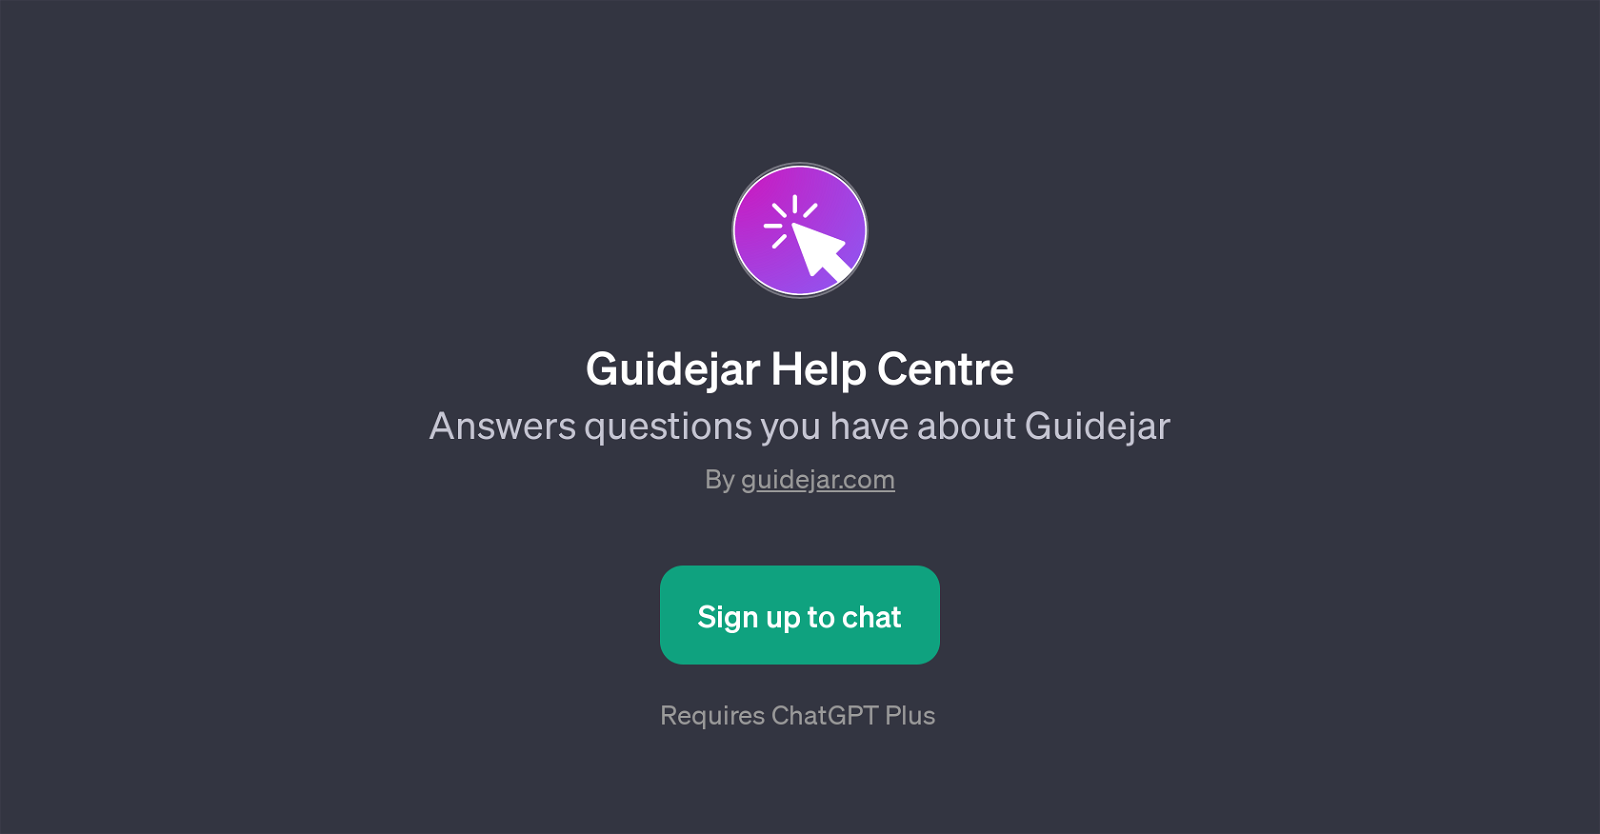 Guidejar Help Centre website